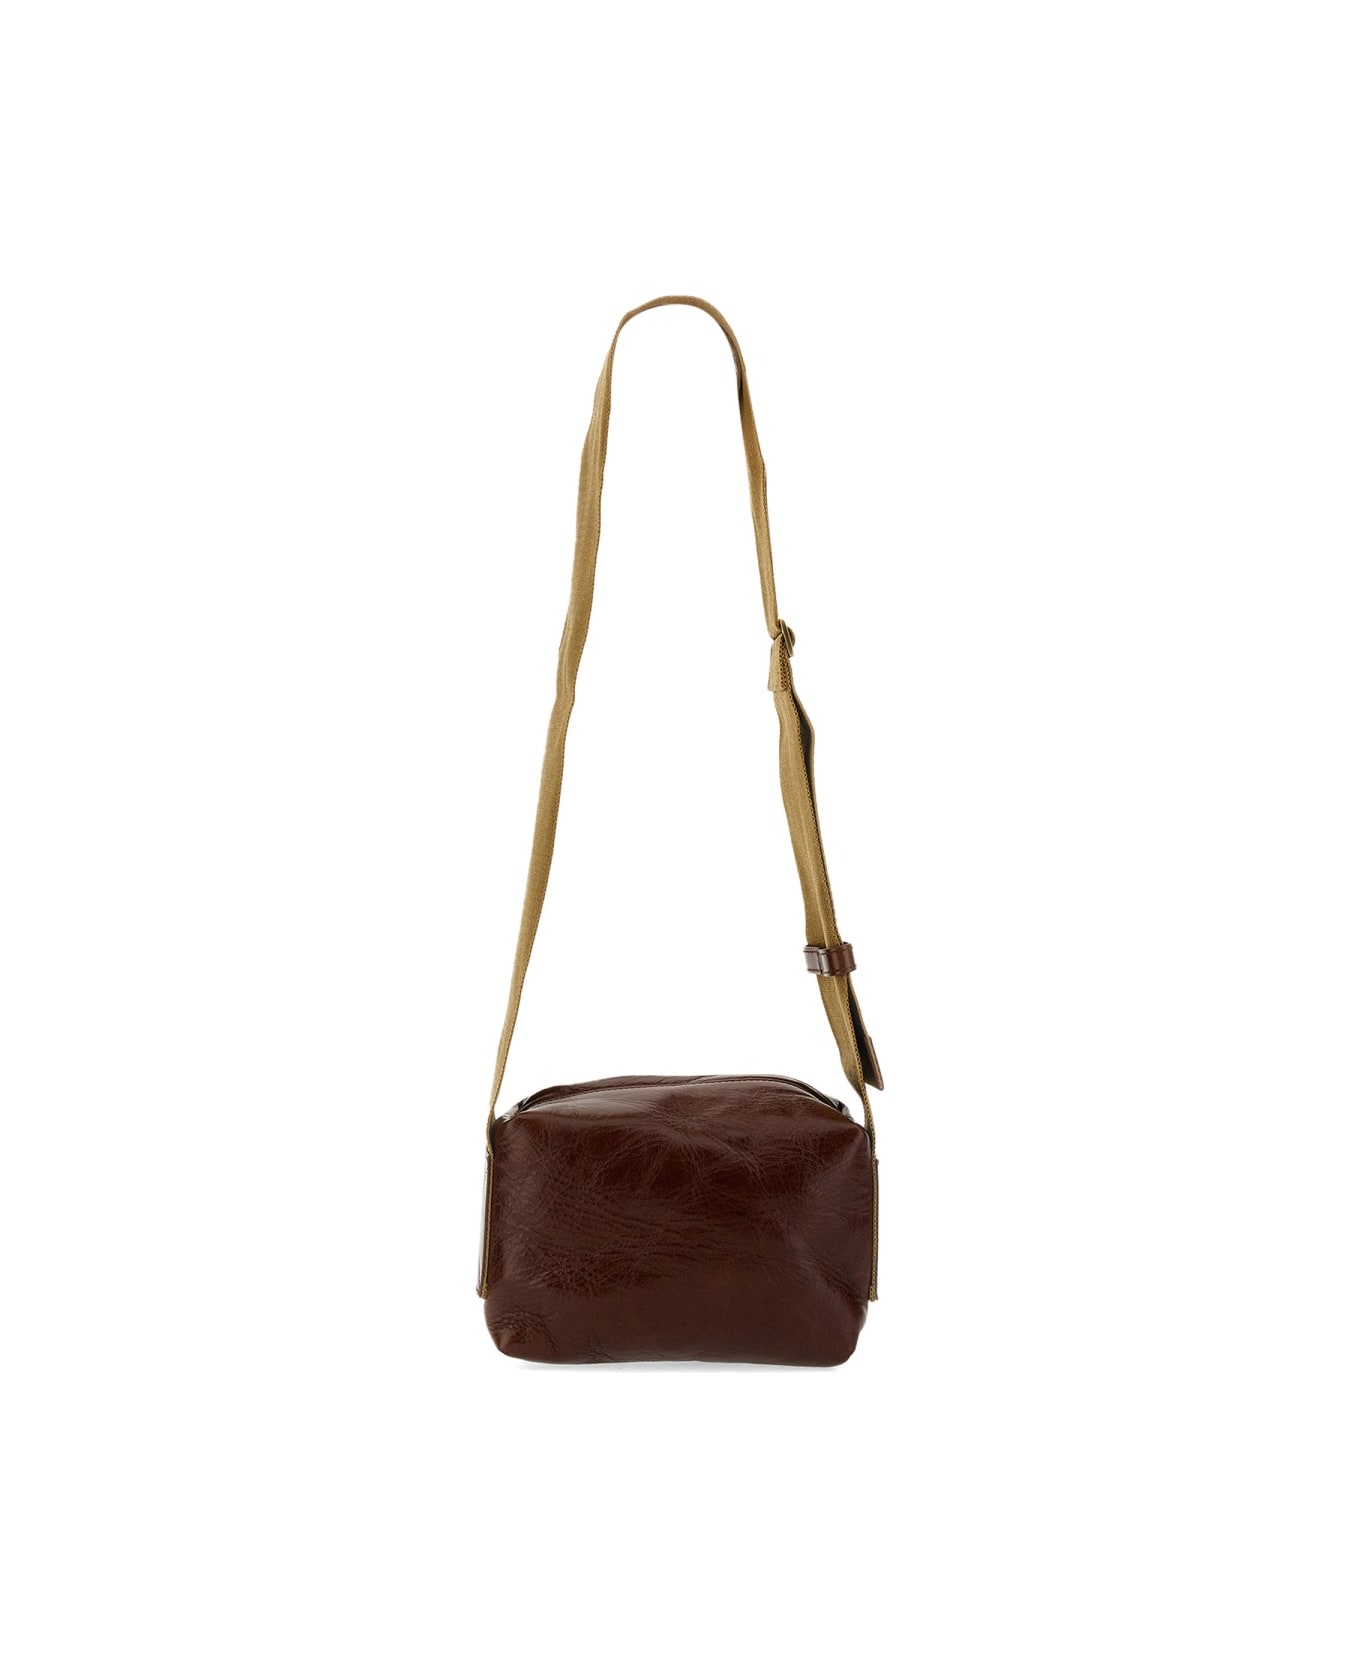 Uma Wang Small Leather Bag - BROWN ショルダーバッグ